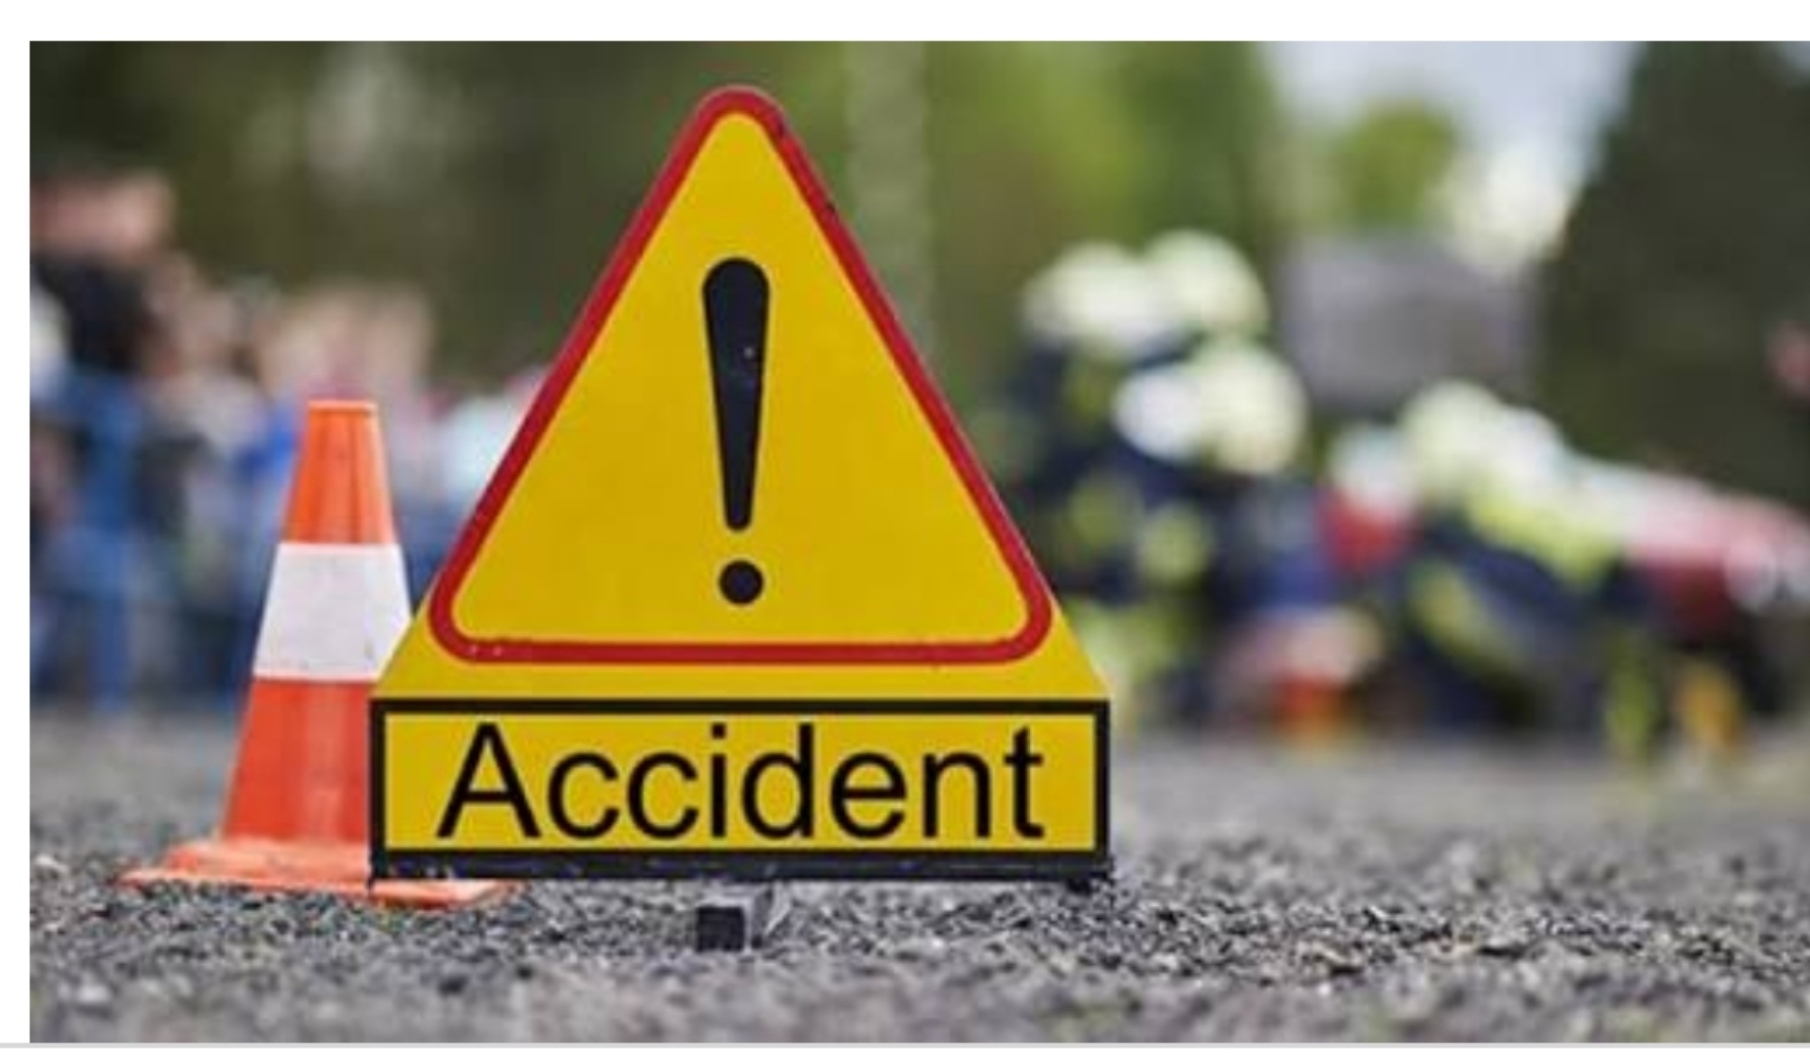 लॉकडाउन: (Road accident) बची कई जिंदगियां, अप्रेल में कम हुए हादसे